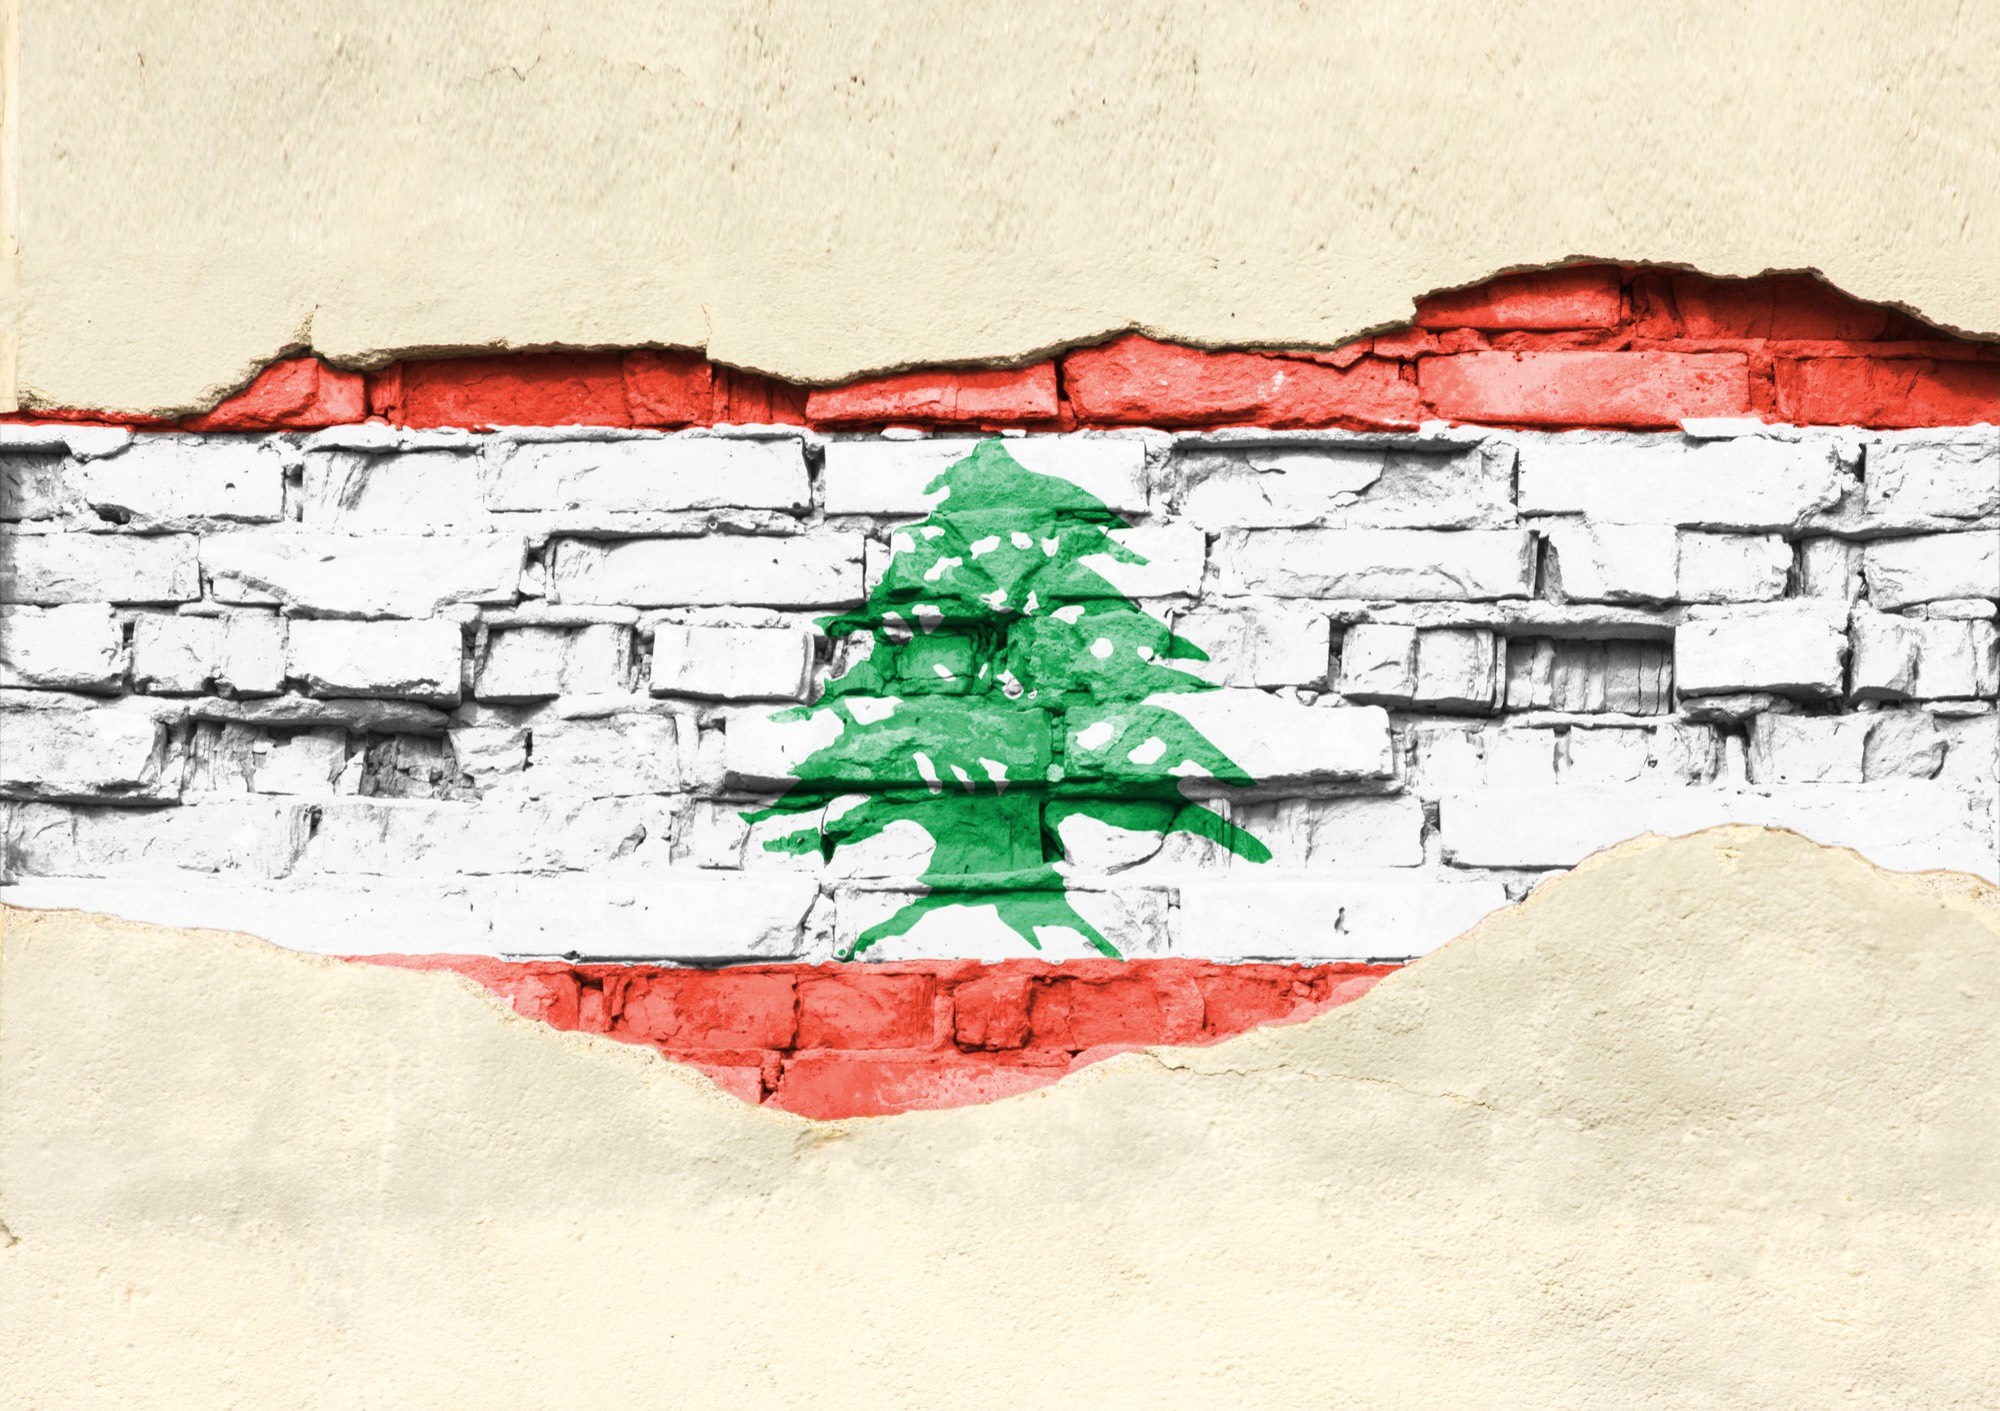 أزمة اقتصادية ومالية خانقة في لبنان وتدهور الليرة اللبنانية لتصل إلى 100 ألف مقابل دولار واحد